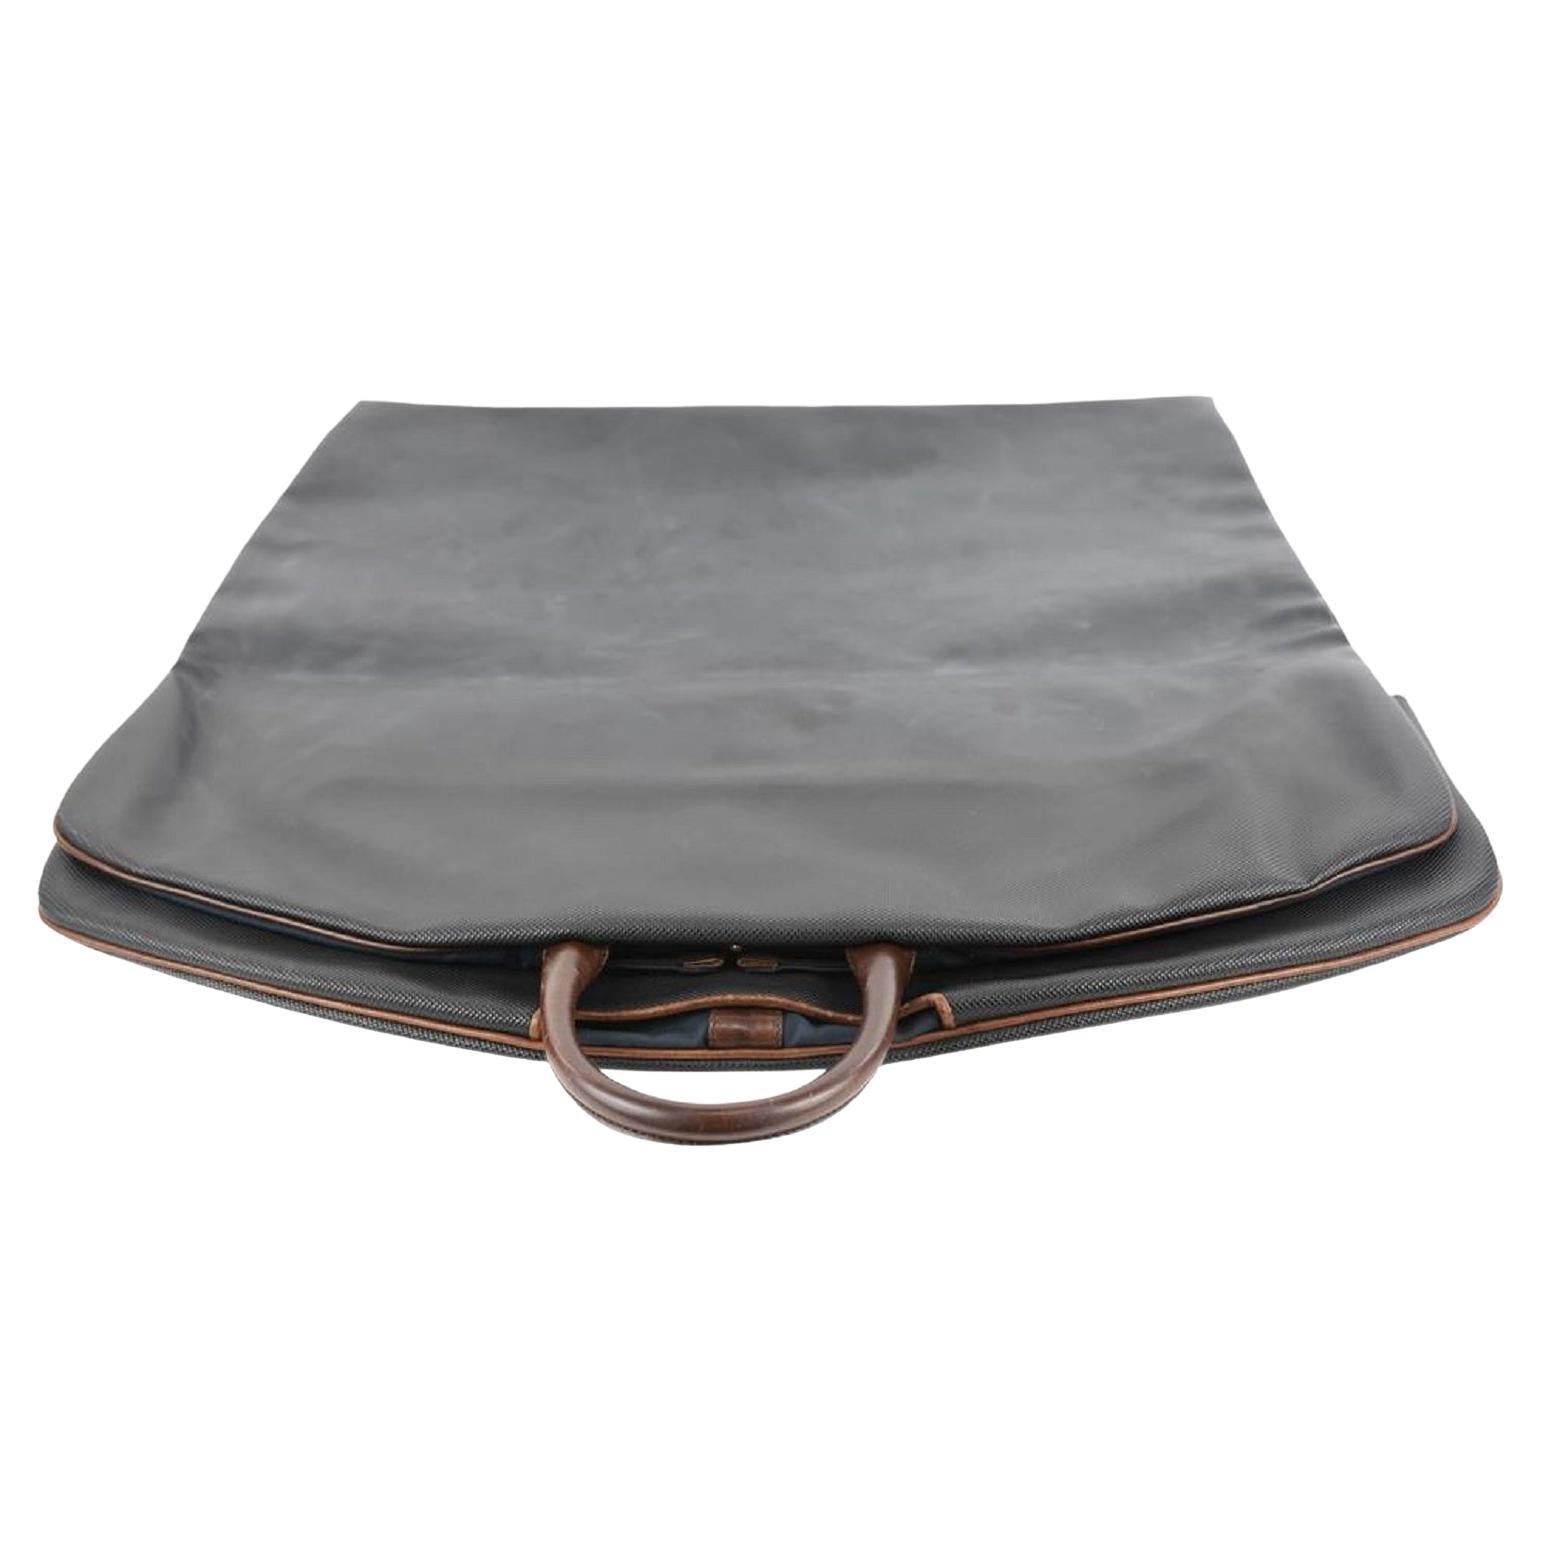 coco chanel black quilted handbag